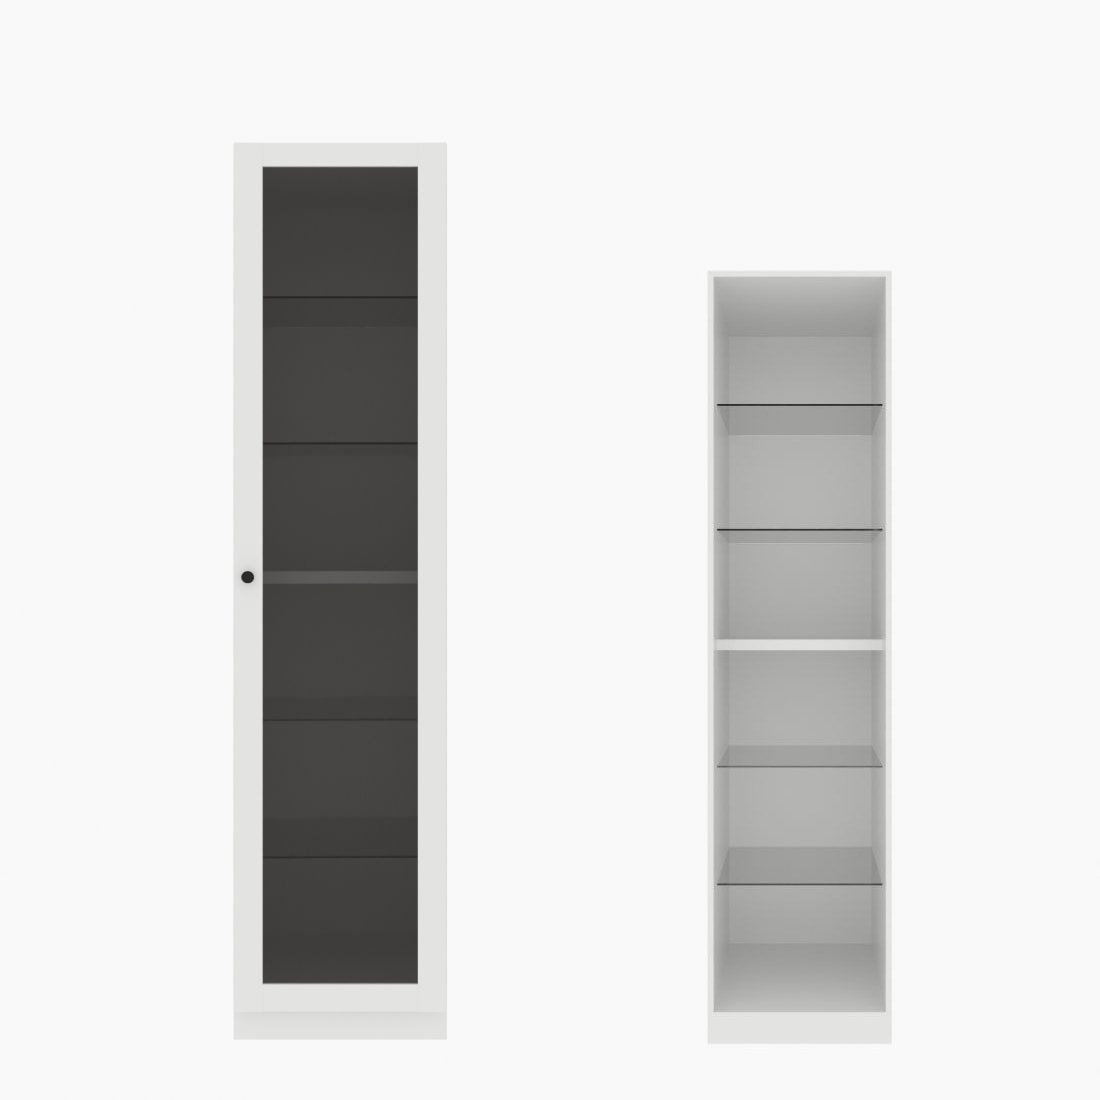 ตู้เสื้อผ้า ตู้โชว์ชั้นกระจก OP-H (หน้าบานเปิดขวา) ขนาด 50 ซม. รุ่น Blox สีขาว&กระจกชาดำ01